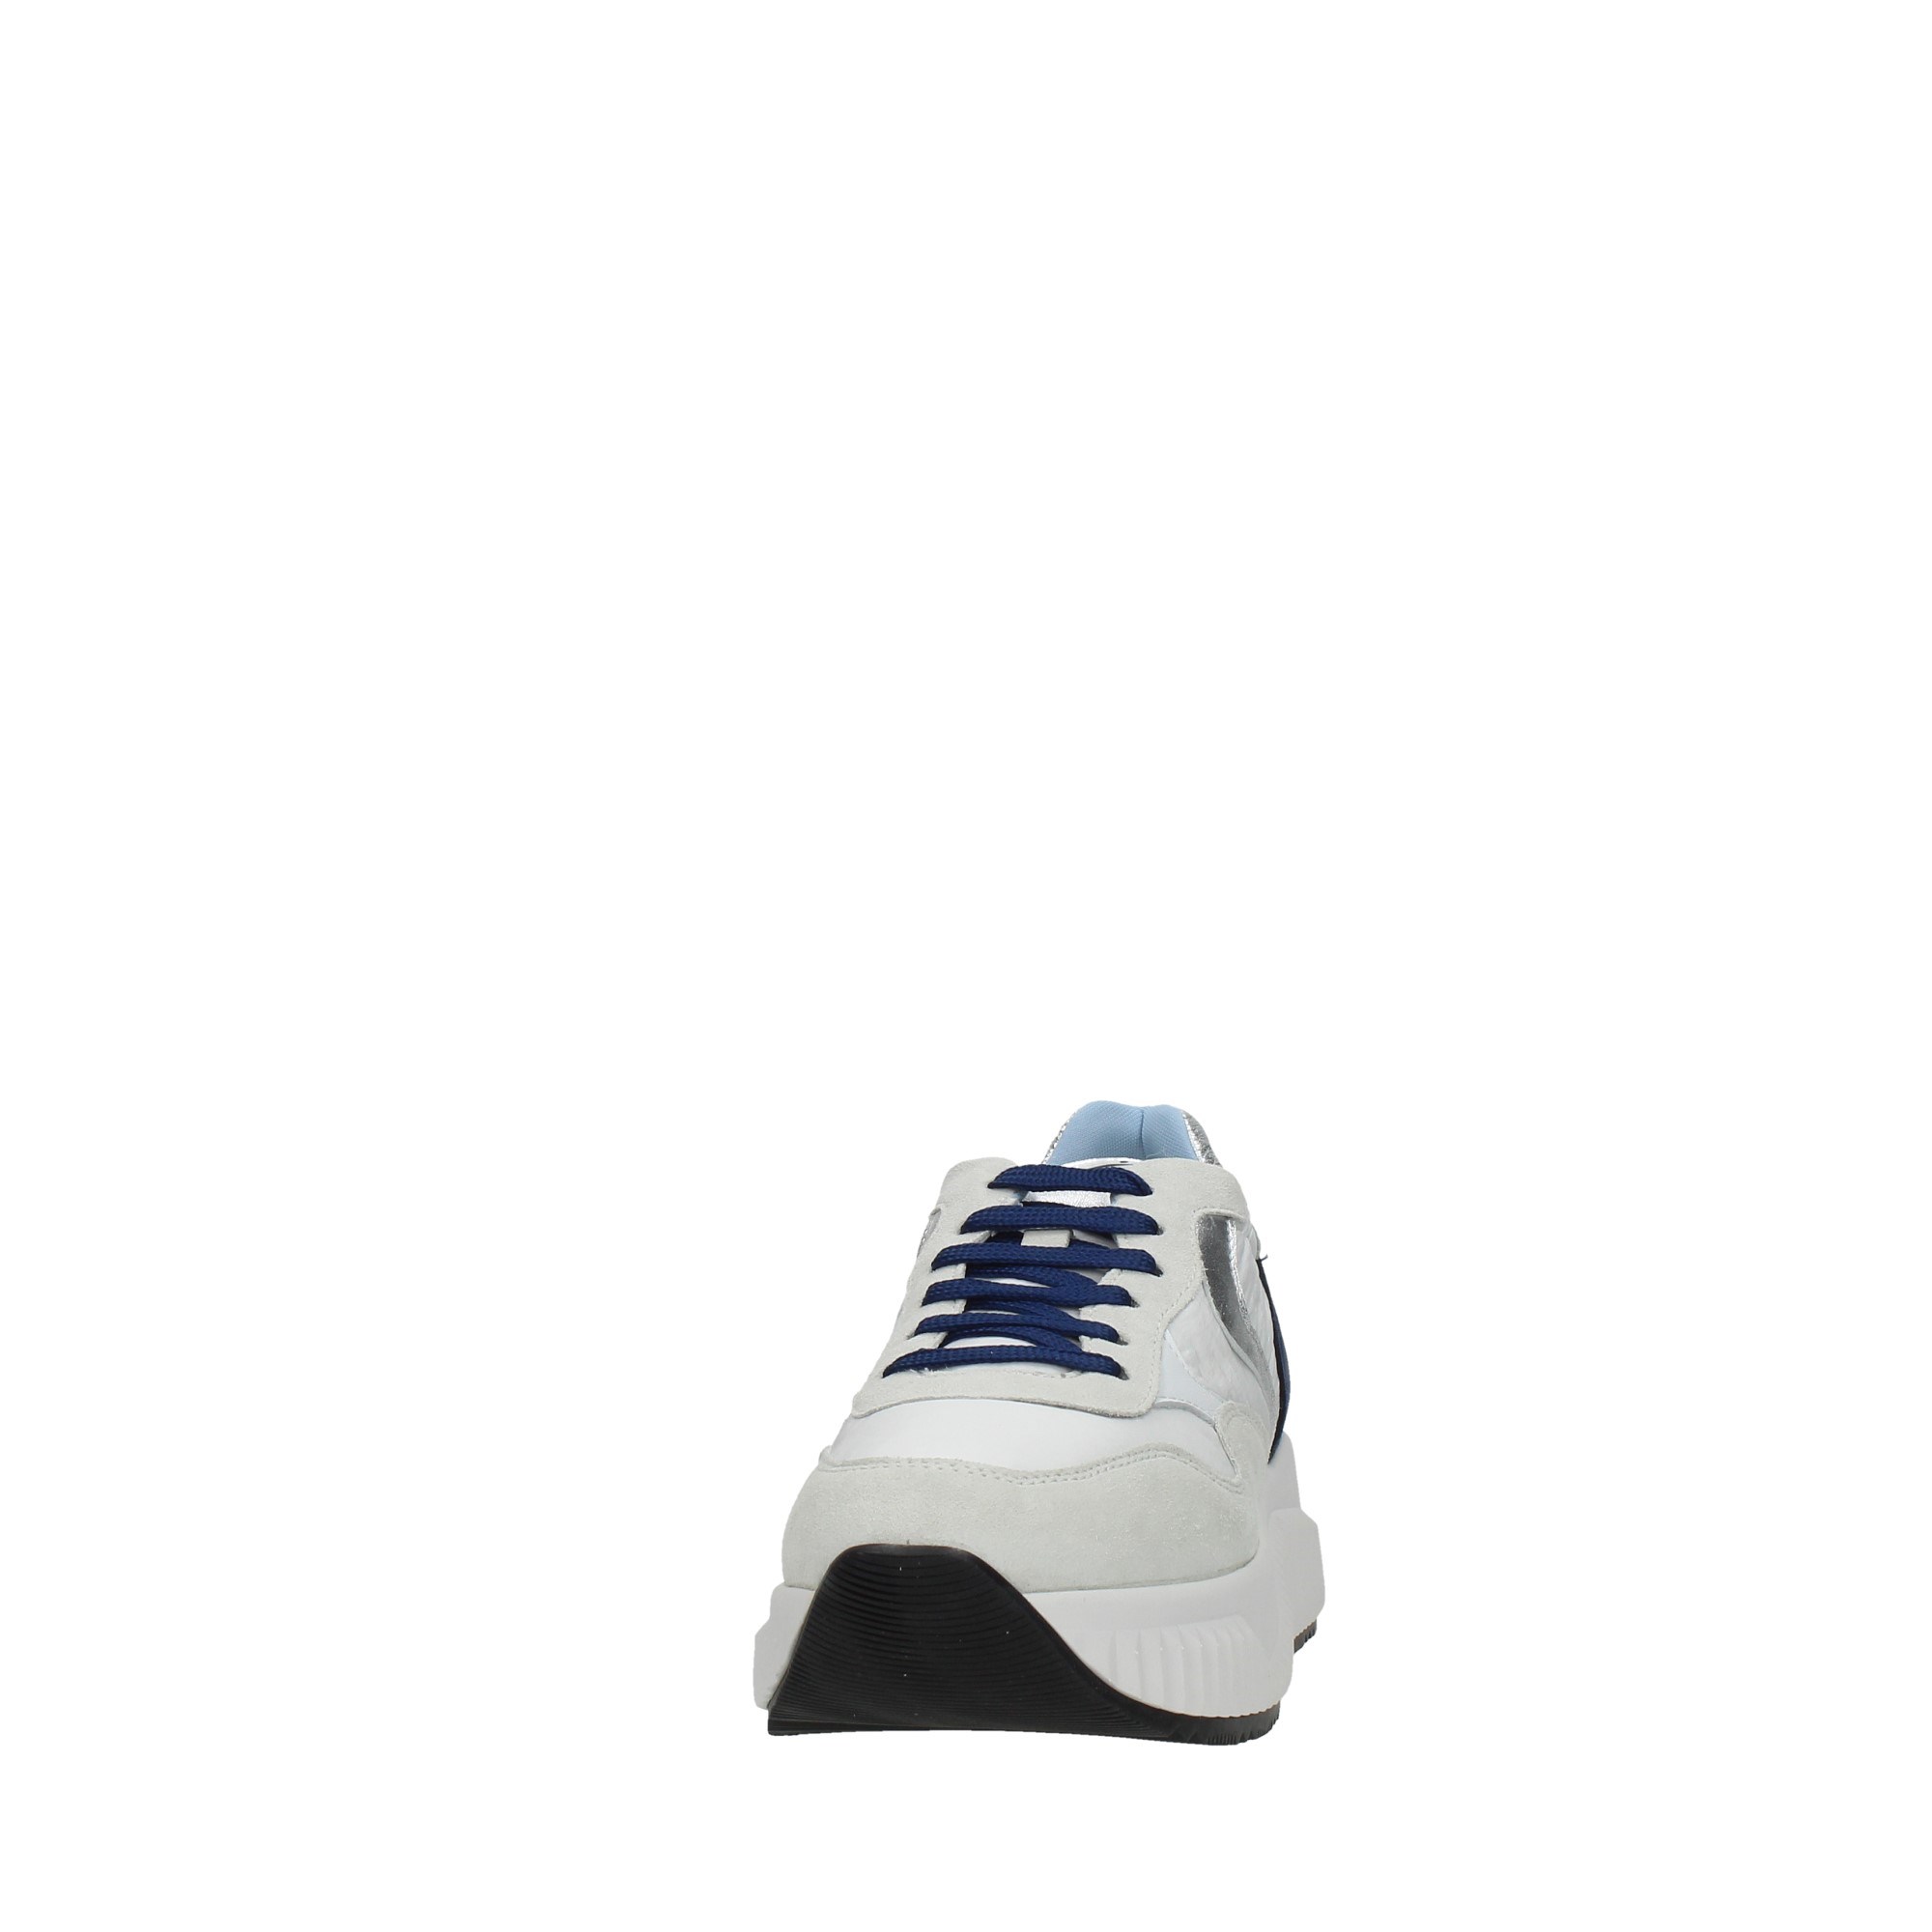 Voile Blanche Scarpe Donna Sneakers Blu 201-8312-02